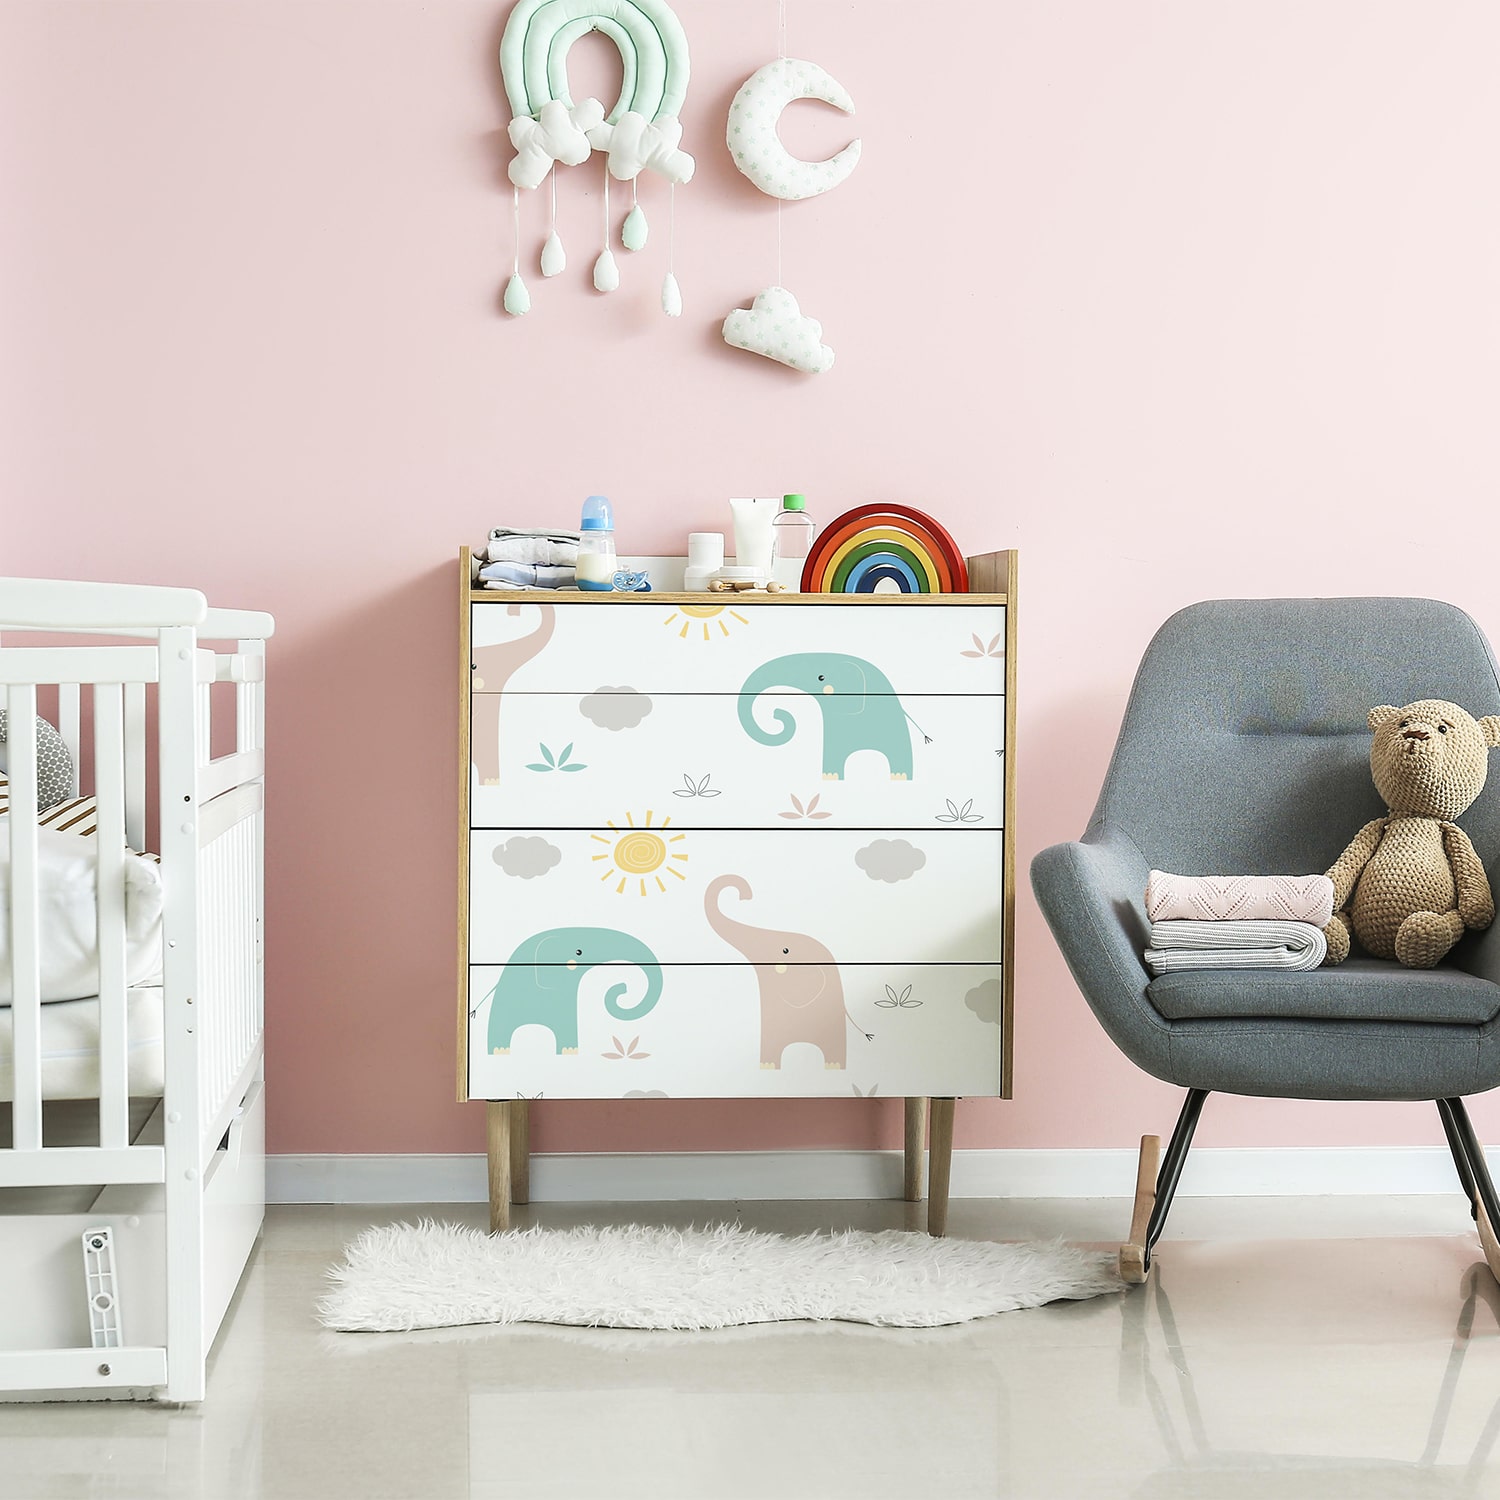 PP76-meuble-papier-peint-adhesif-decoratif-revetement-vinyle-motifs-douceur-elephant-renovation-meuble-mur-min